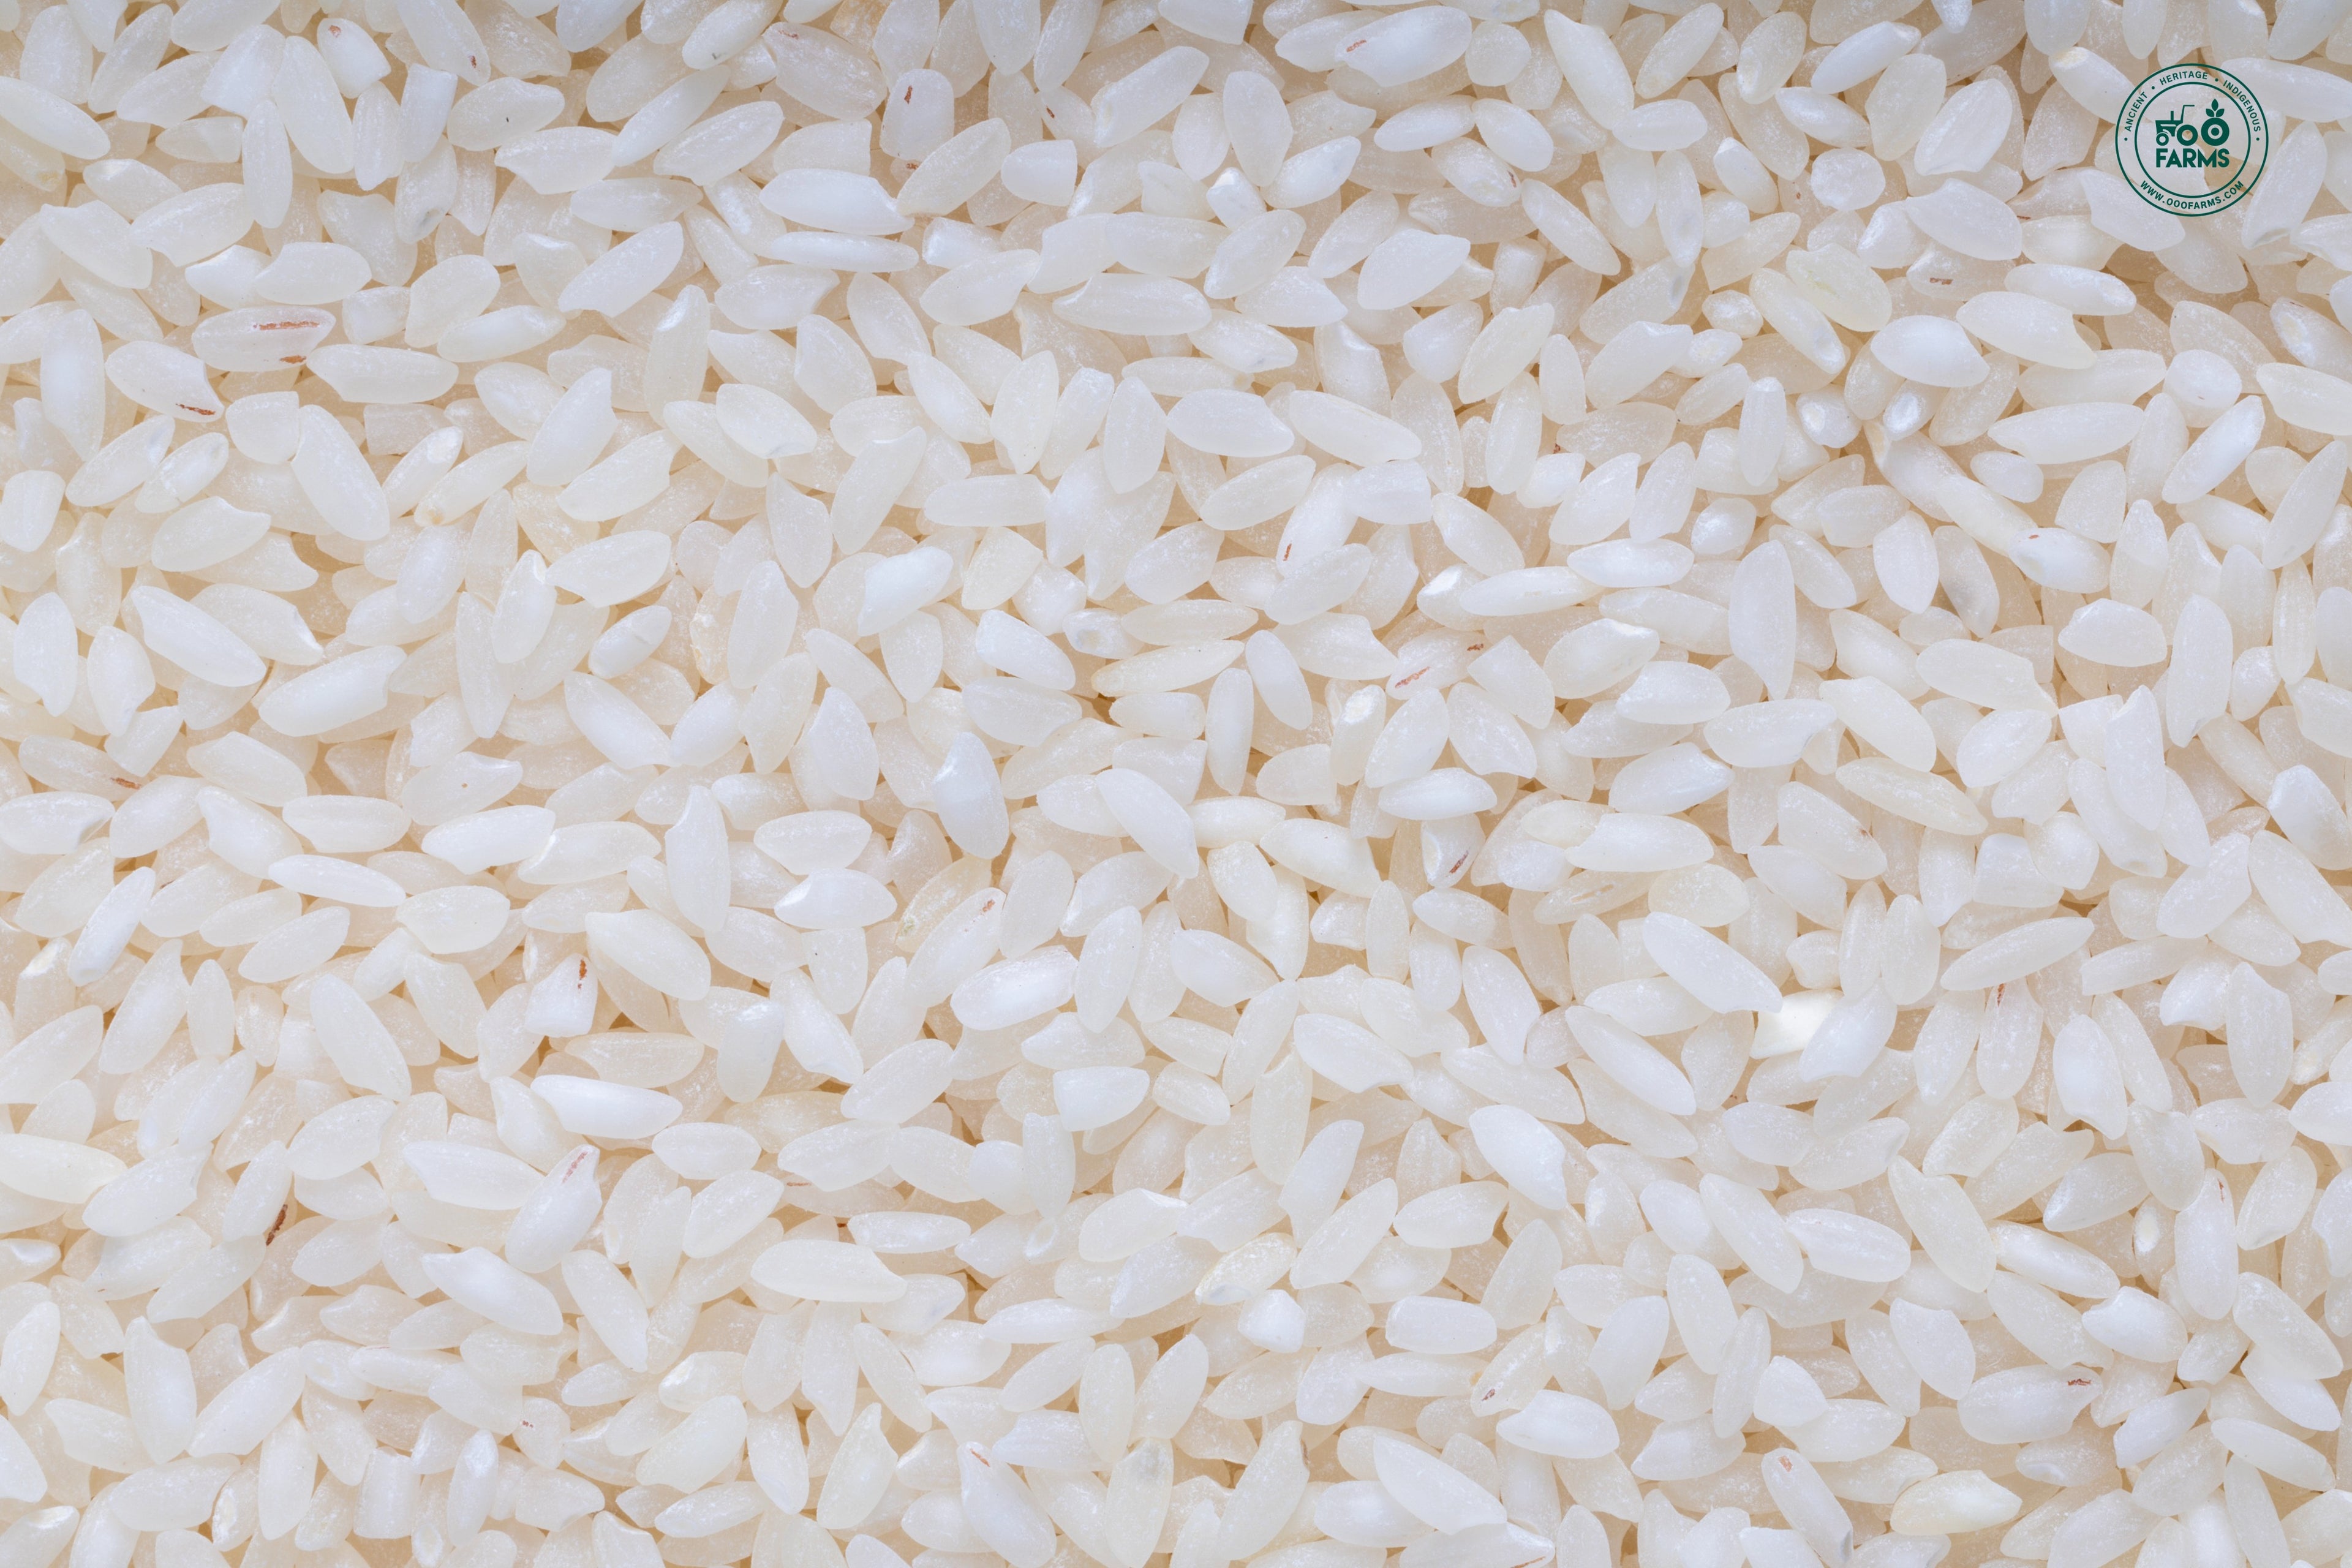 Sattaone Rice (Semi Polished) / सत्तावन्न